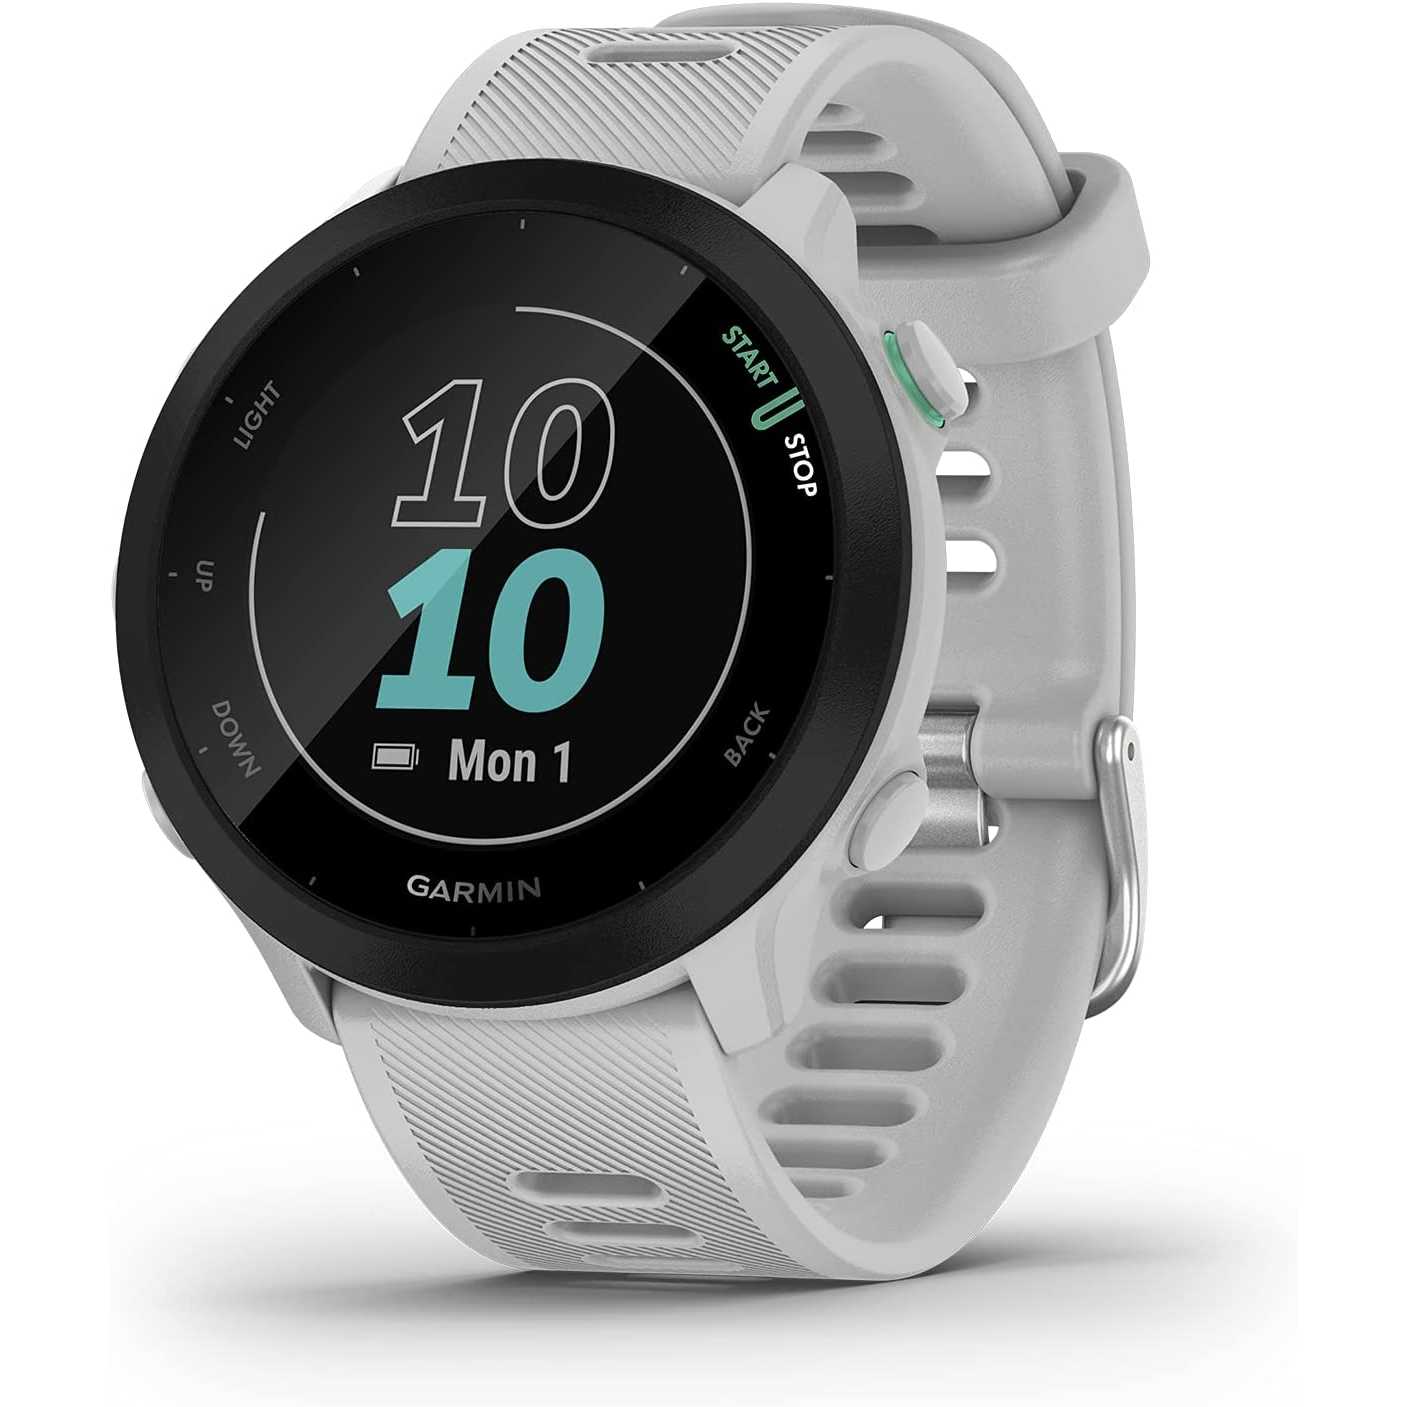 Garmin Forerunner 55 (Whitestone), Smartwatch running con GPS, Cardio, Piani di allenamento inclusi, VO2max, Allenamenti personalizzati, Garmin Connect IQ, Taglia unica Whitestone Single